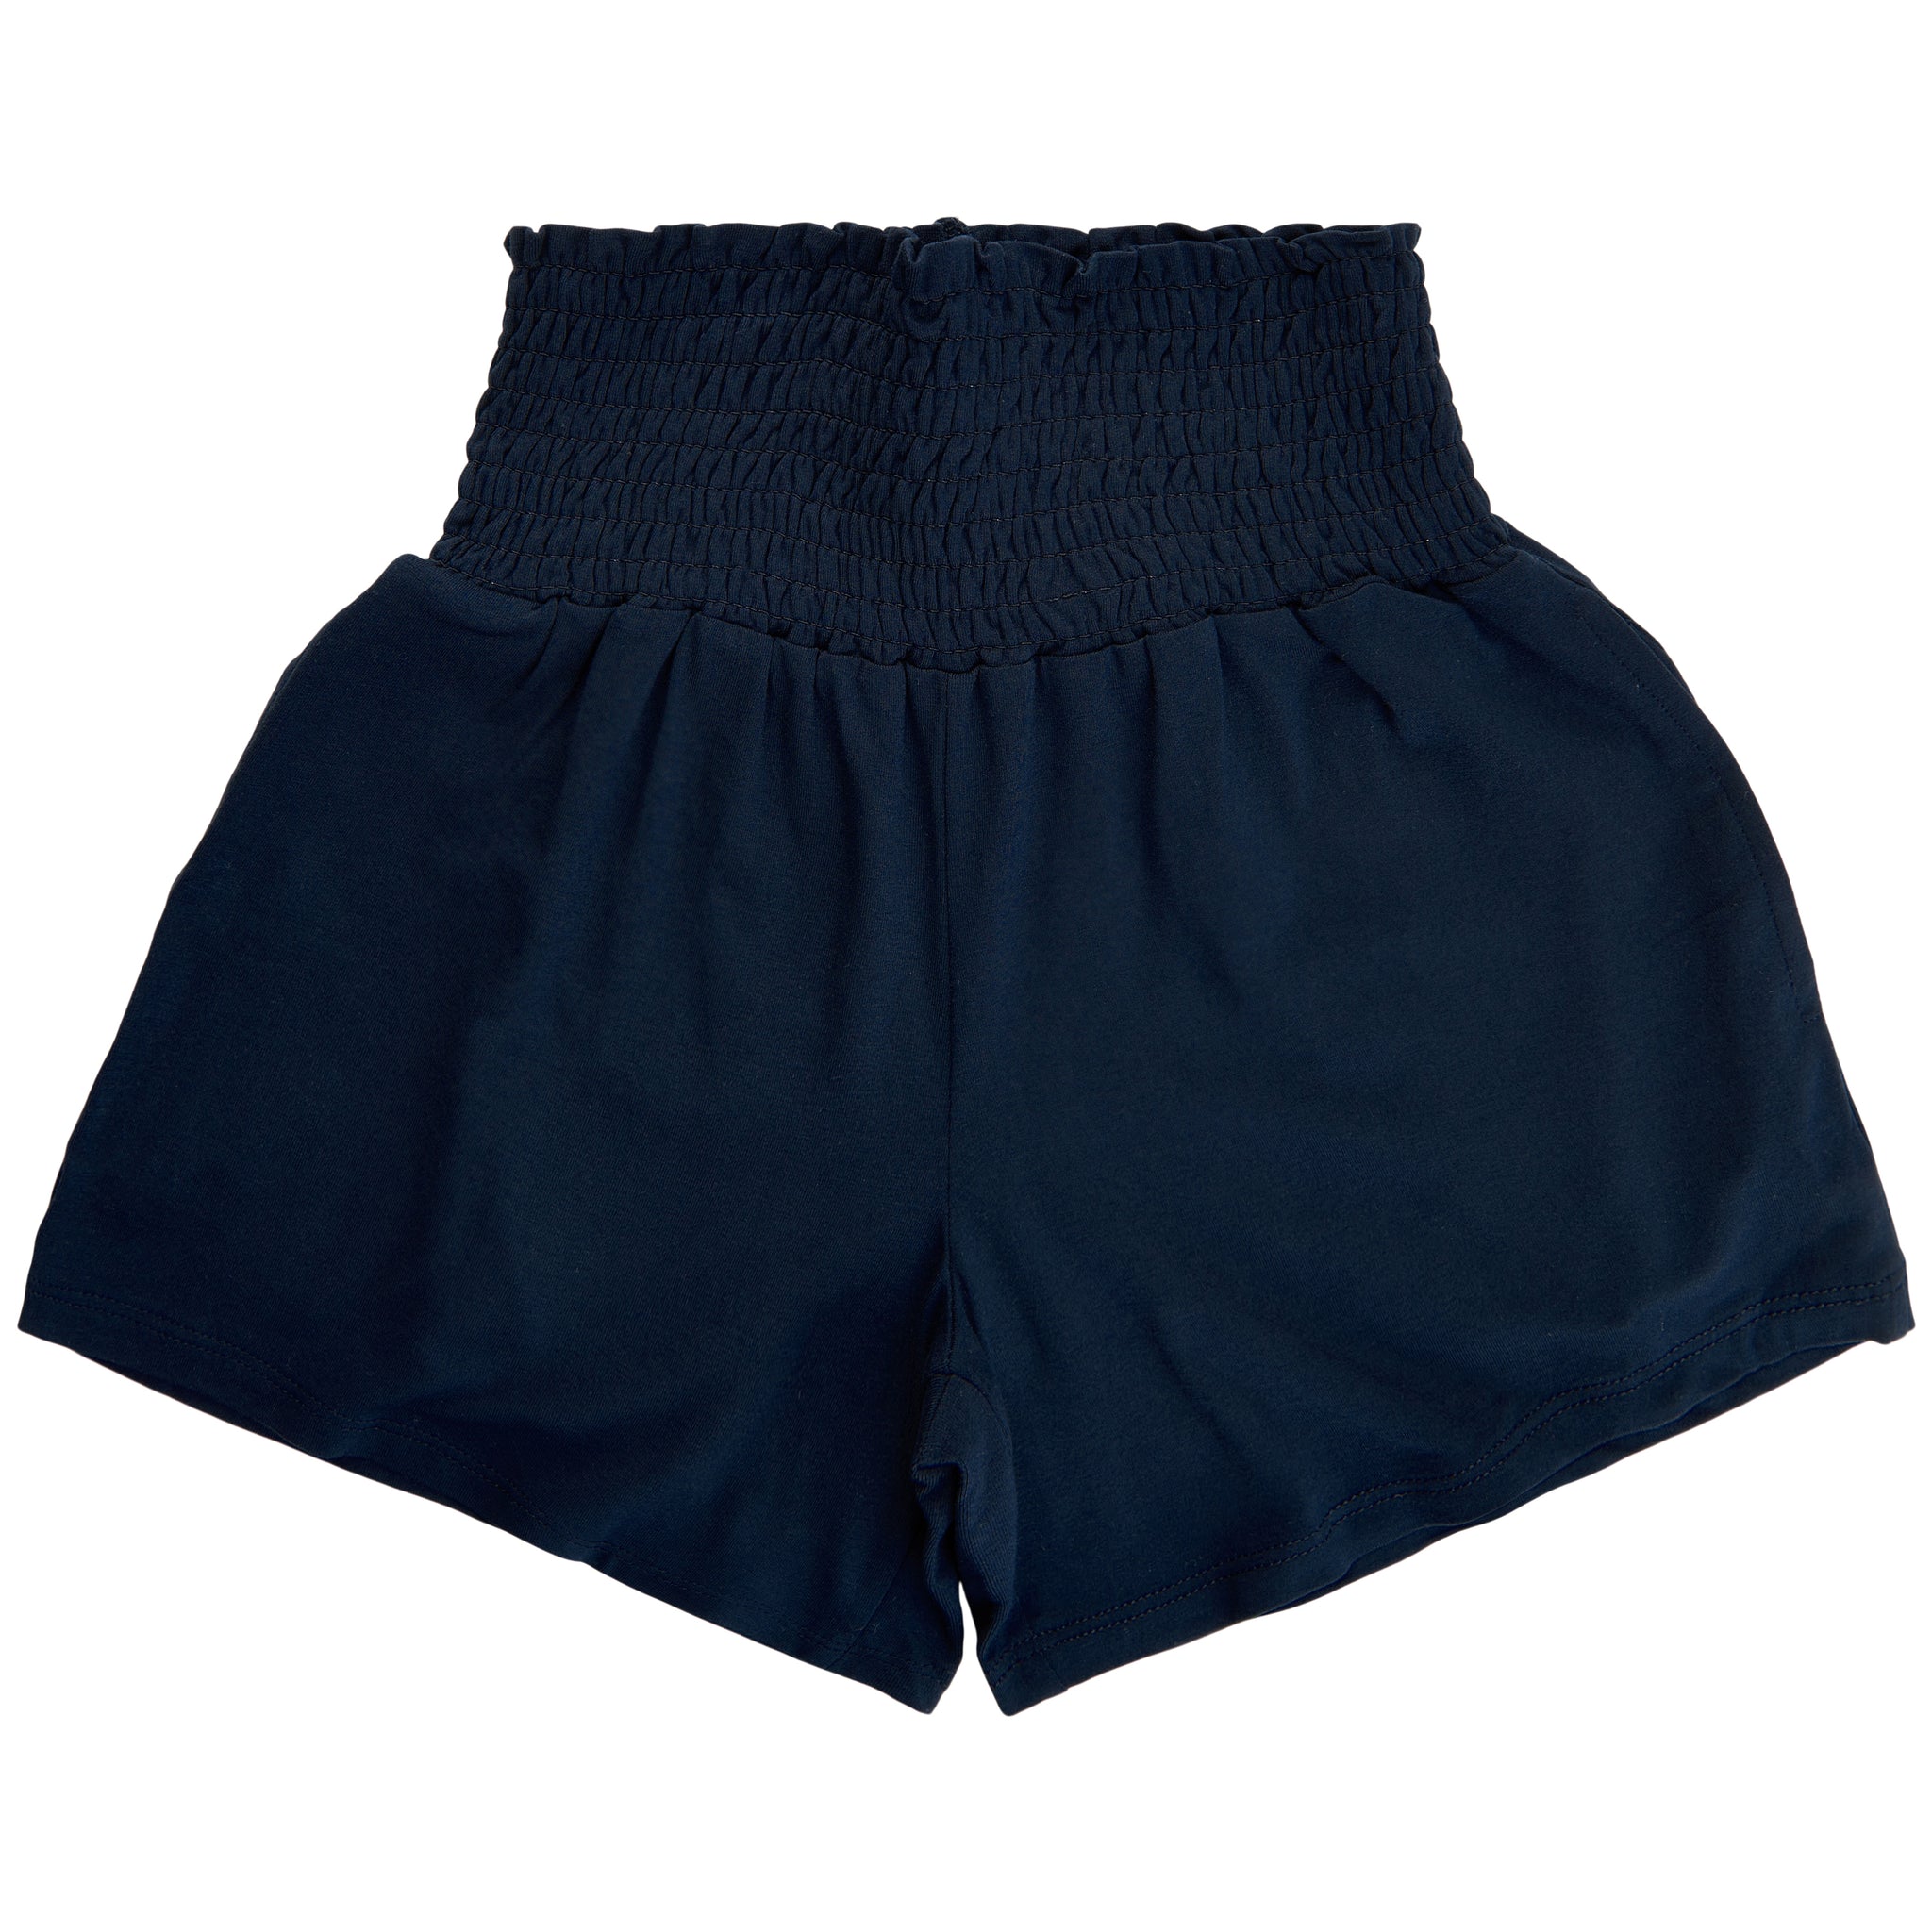 THE NEW - Cia Shorts (TN4226) - Navy Blazer